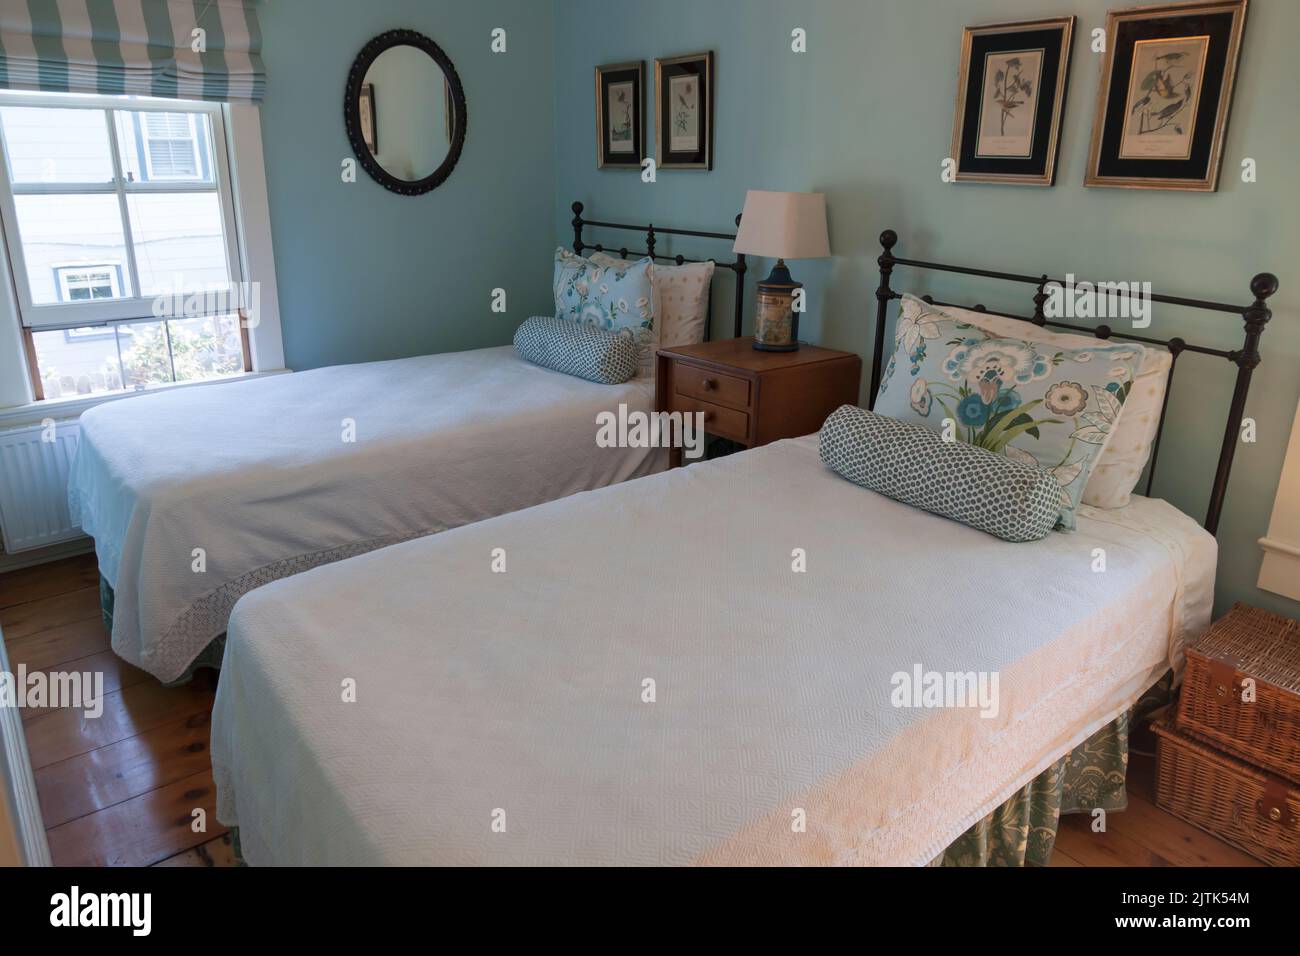 Location de vacances la chambre de la maison avec deux lits jumeaux. Banque D'Images